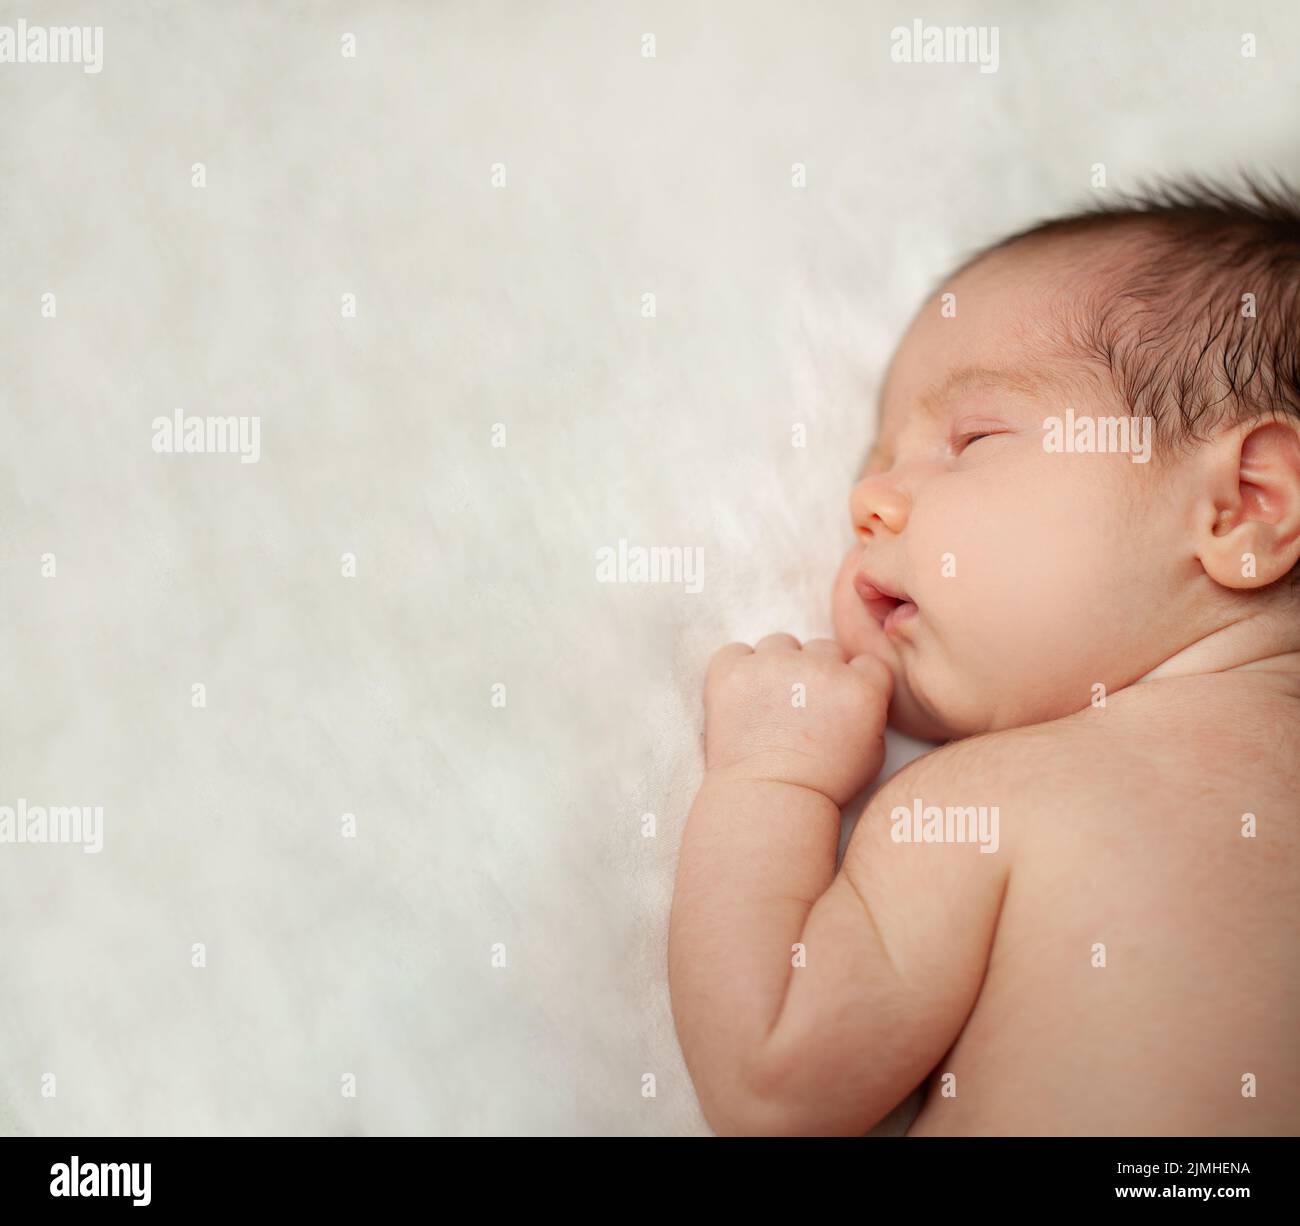 Vista superior foto de un bebé recién nacido durmiendo bien sobre fondo blanco con espacio de copia Foto de stock